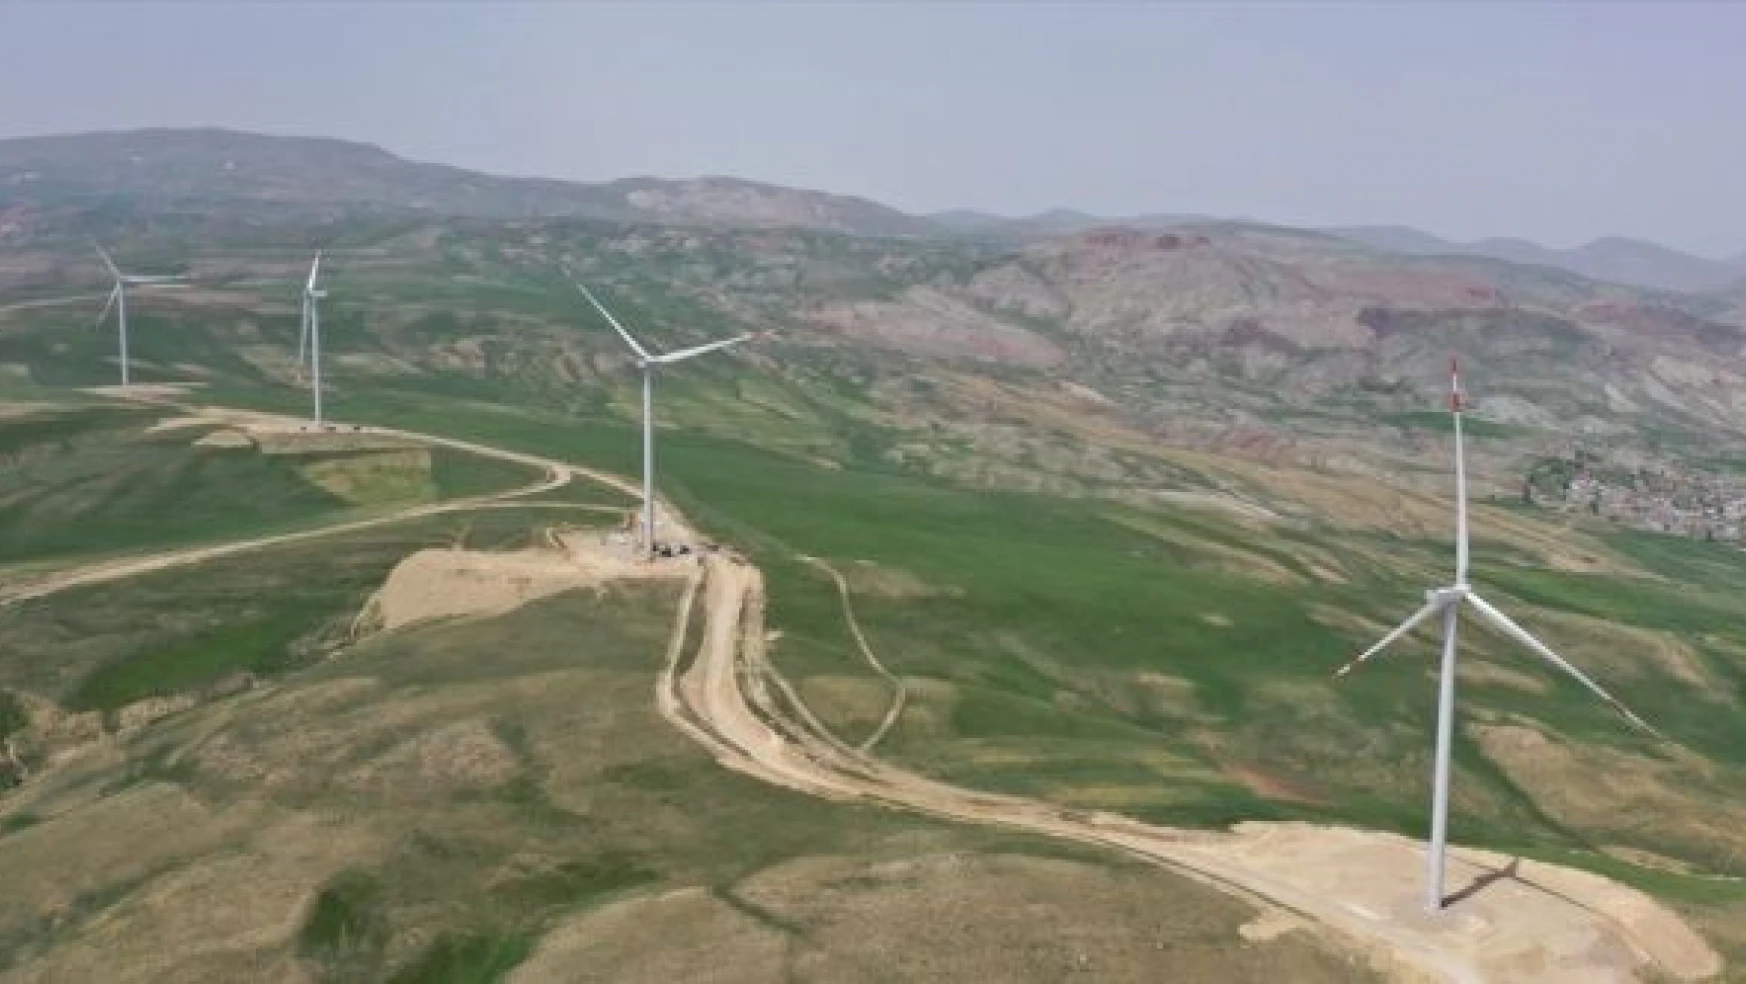 Ağrı'da  türbinler rüzgarı enerjiye dönüştürüyor